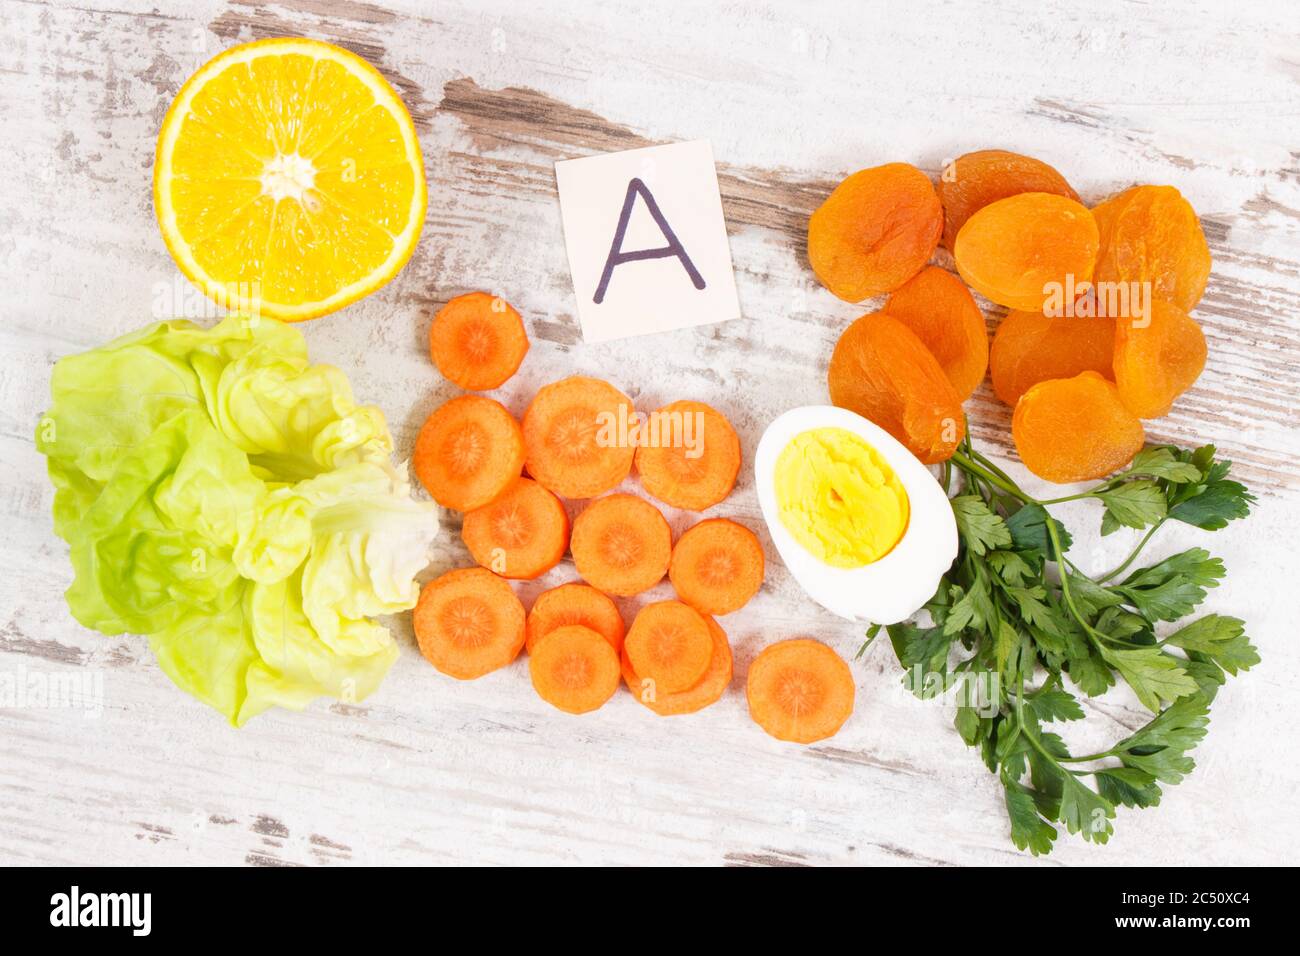 Diferentes ingredientes saludables y nutritivas que contienen vitamina A, fibra dietética y minerales naturales Foto de stock